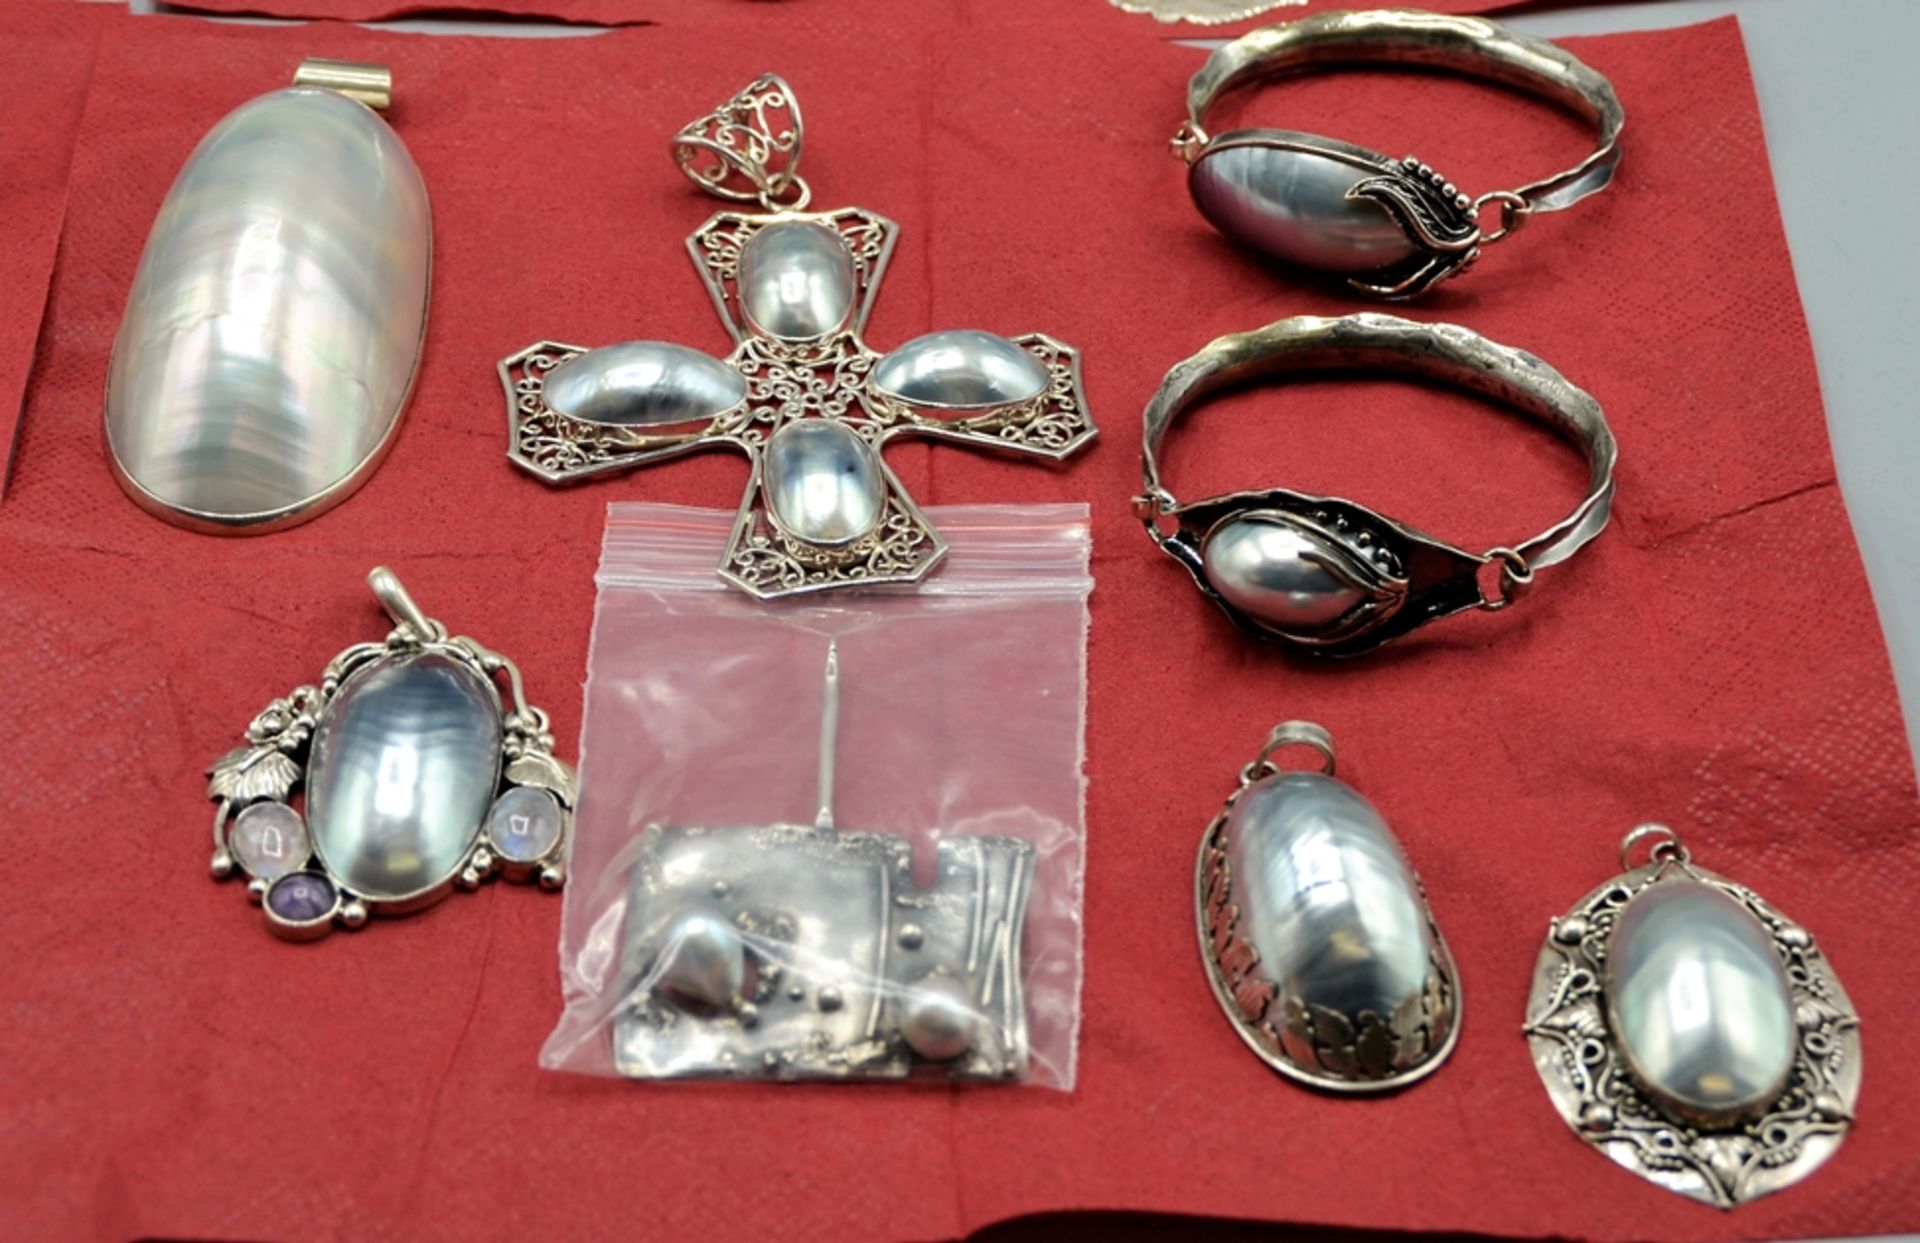 Perlmutt Perlen Silberschmuck sehr hochwertig Konvolut ca. 800 g, wunderschöne Perlmutt Schmuckstüc - Bild 3 aus 5